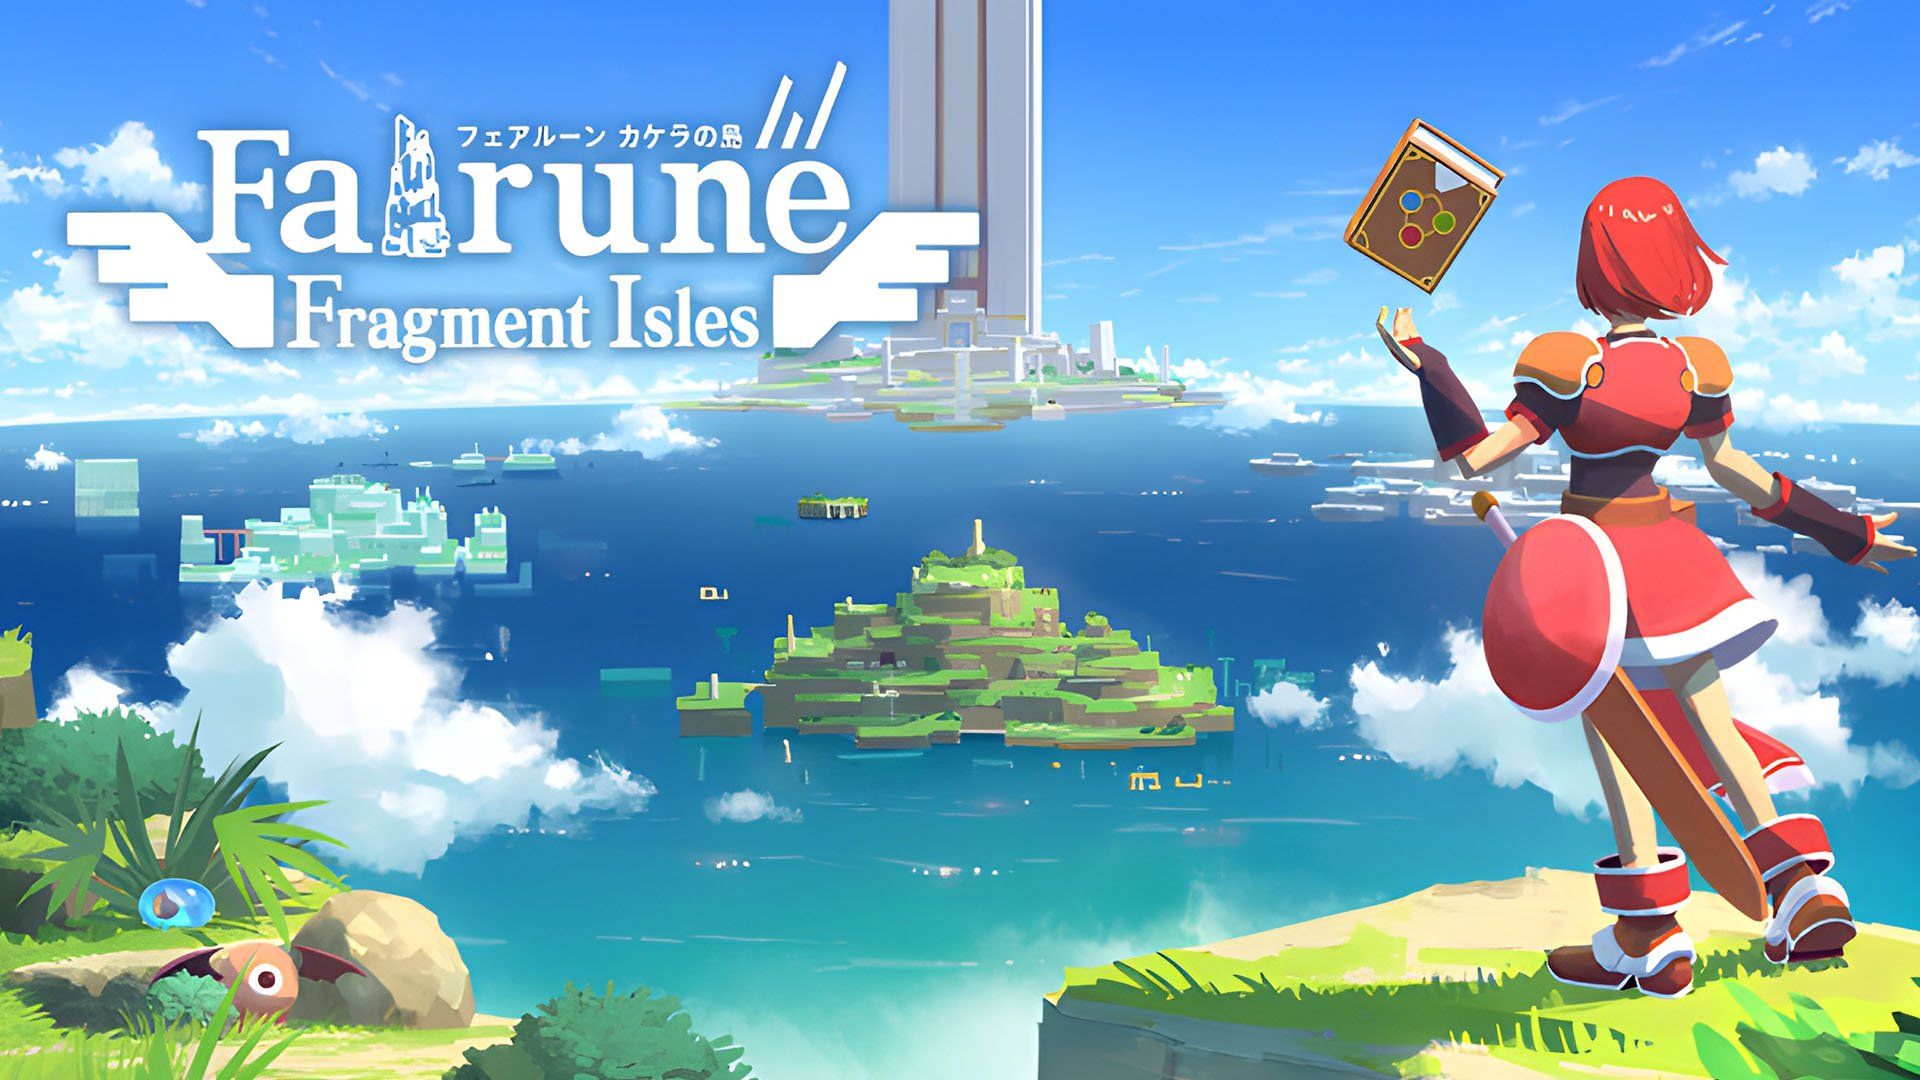 Fairune Fragment Isles, annunciata l’avventura 8-bit in stile Zelda 